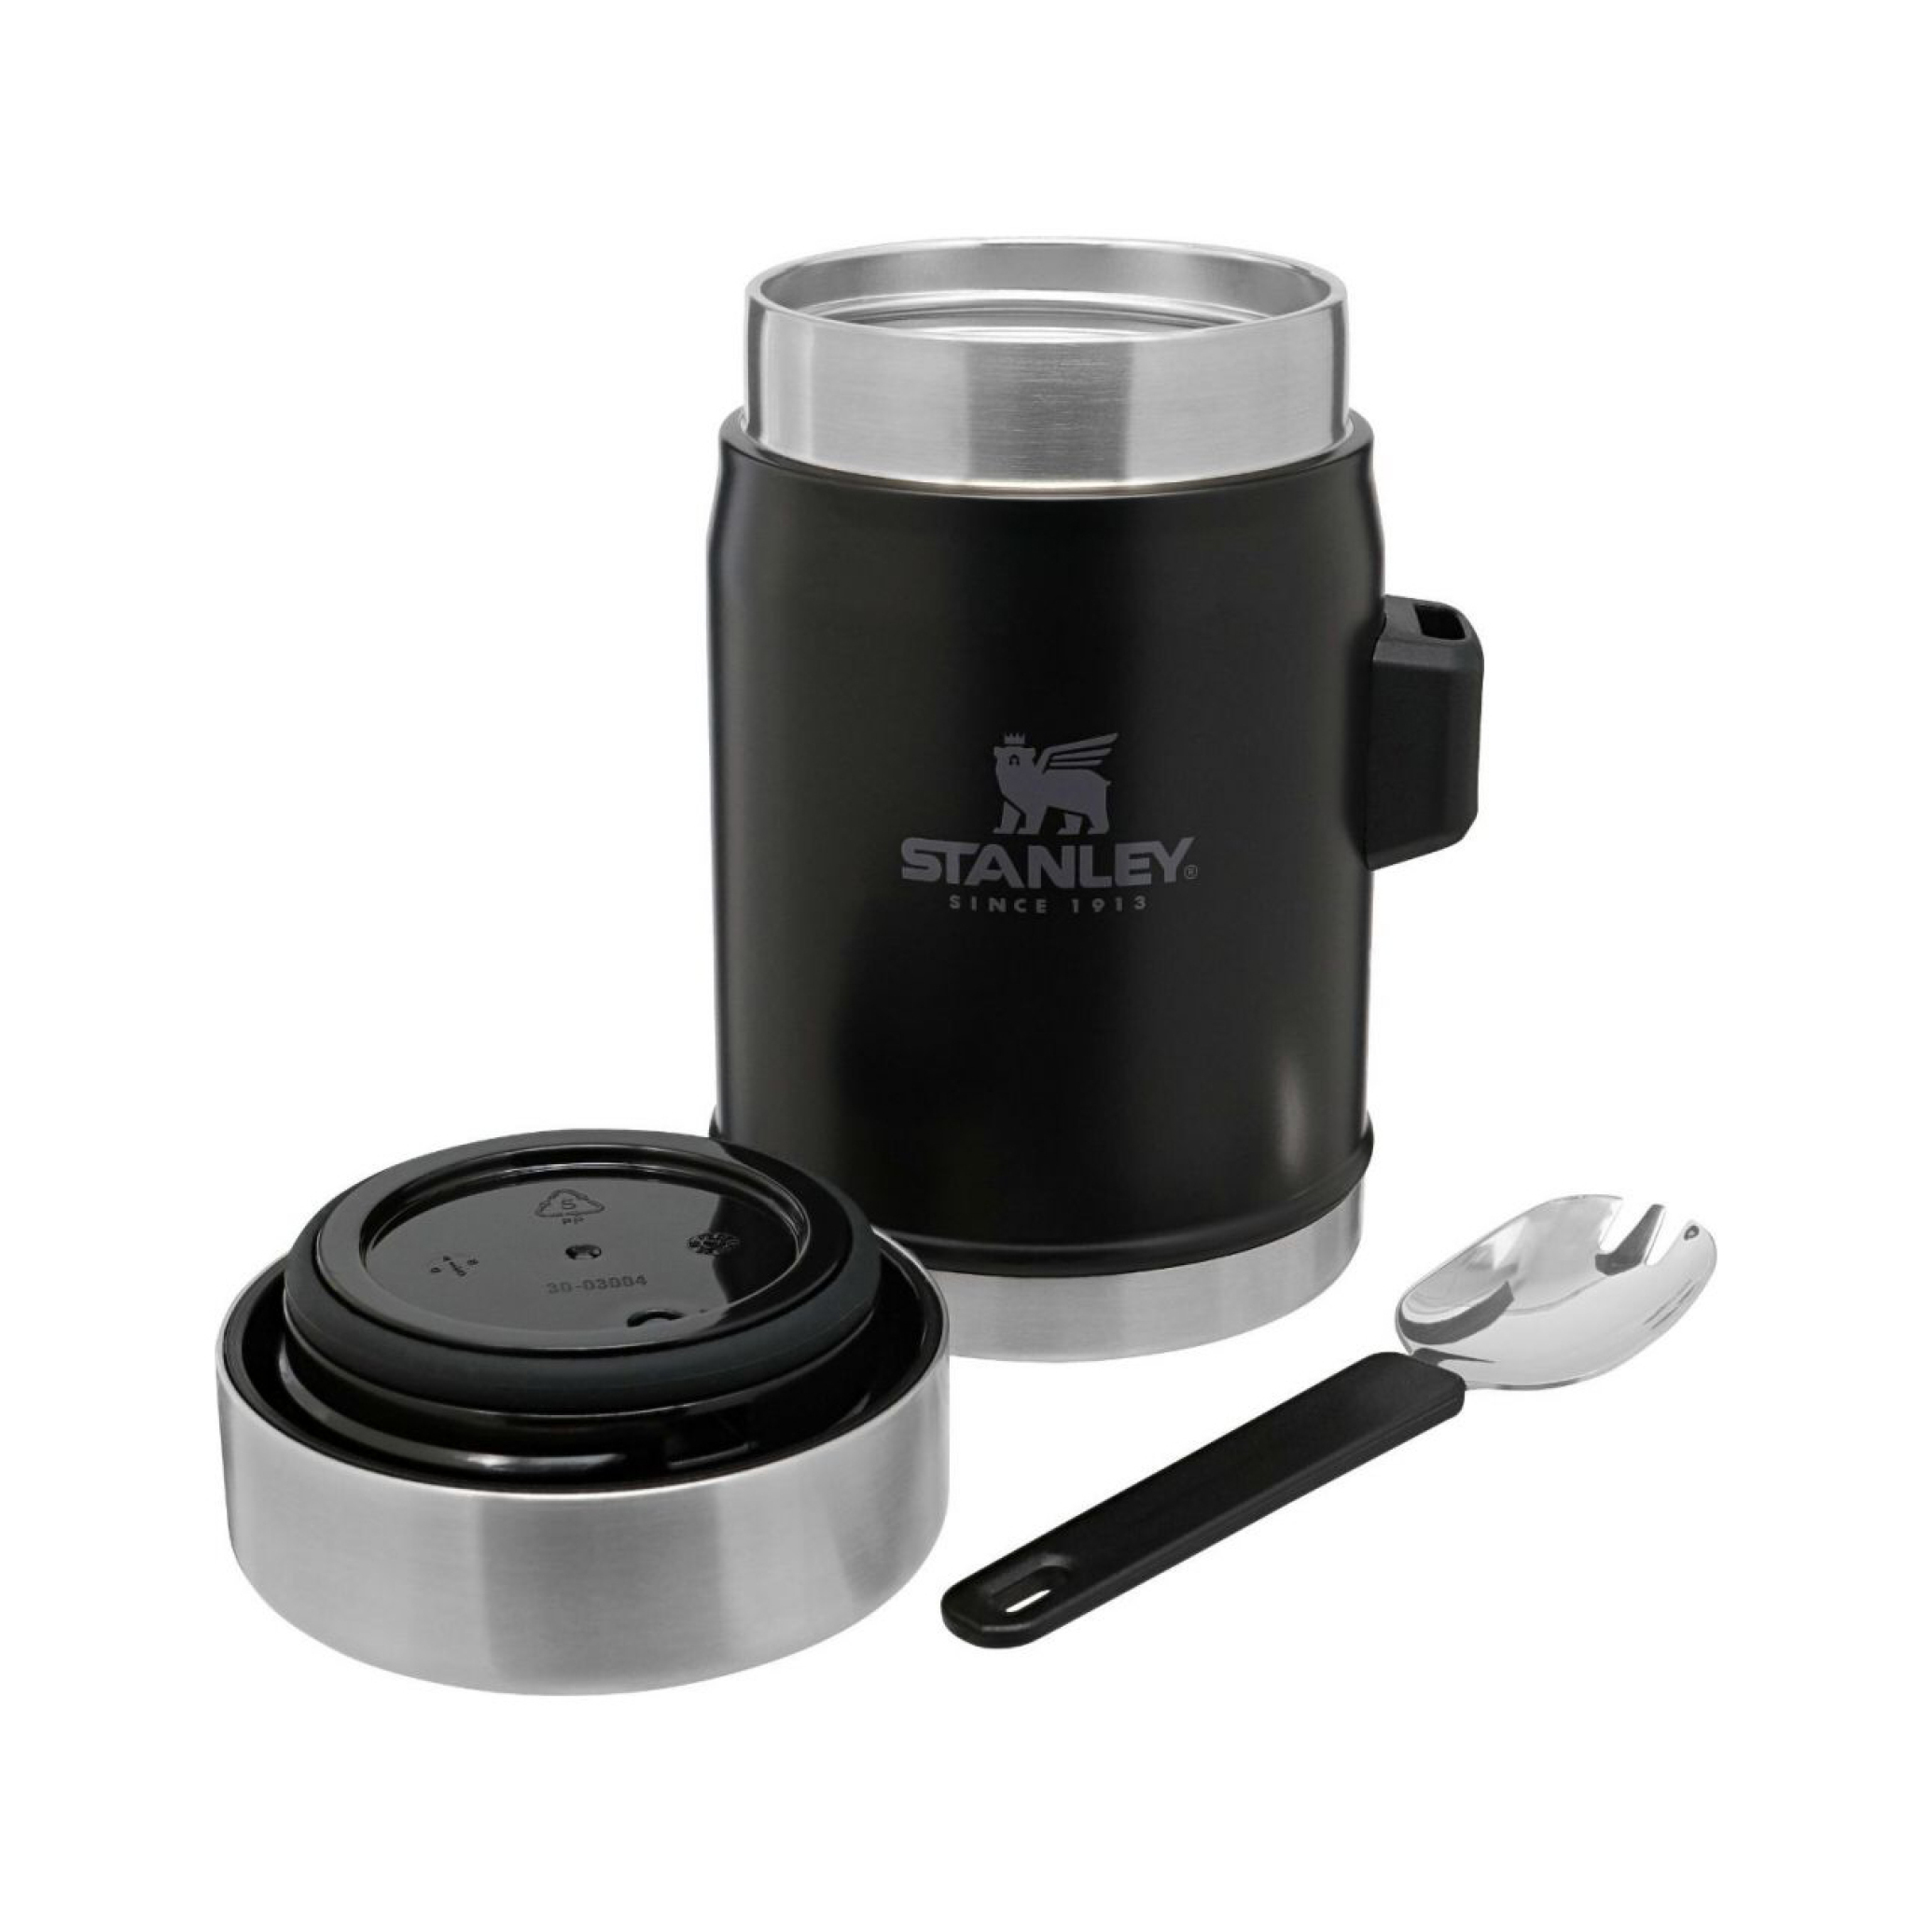  ظرف غذا استنلی کلاسیک با قاشق 0.4 لیتری | STANLEY The Legendary Food Jar and Spork 0.4L | فلاسک غذا استنلی 